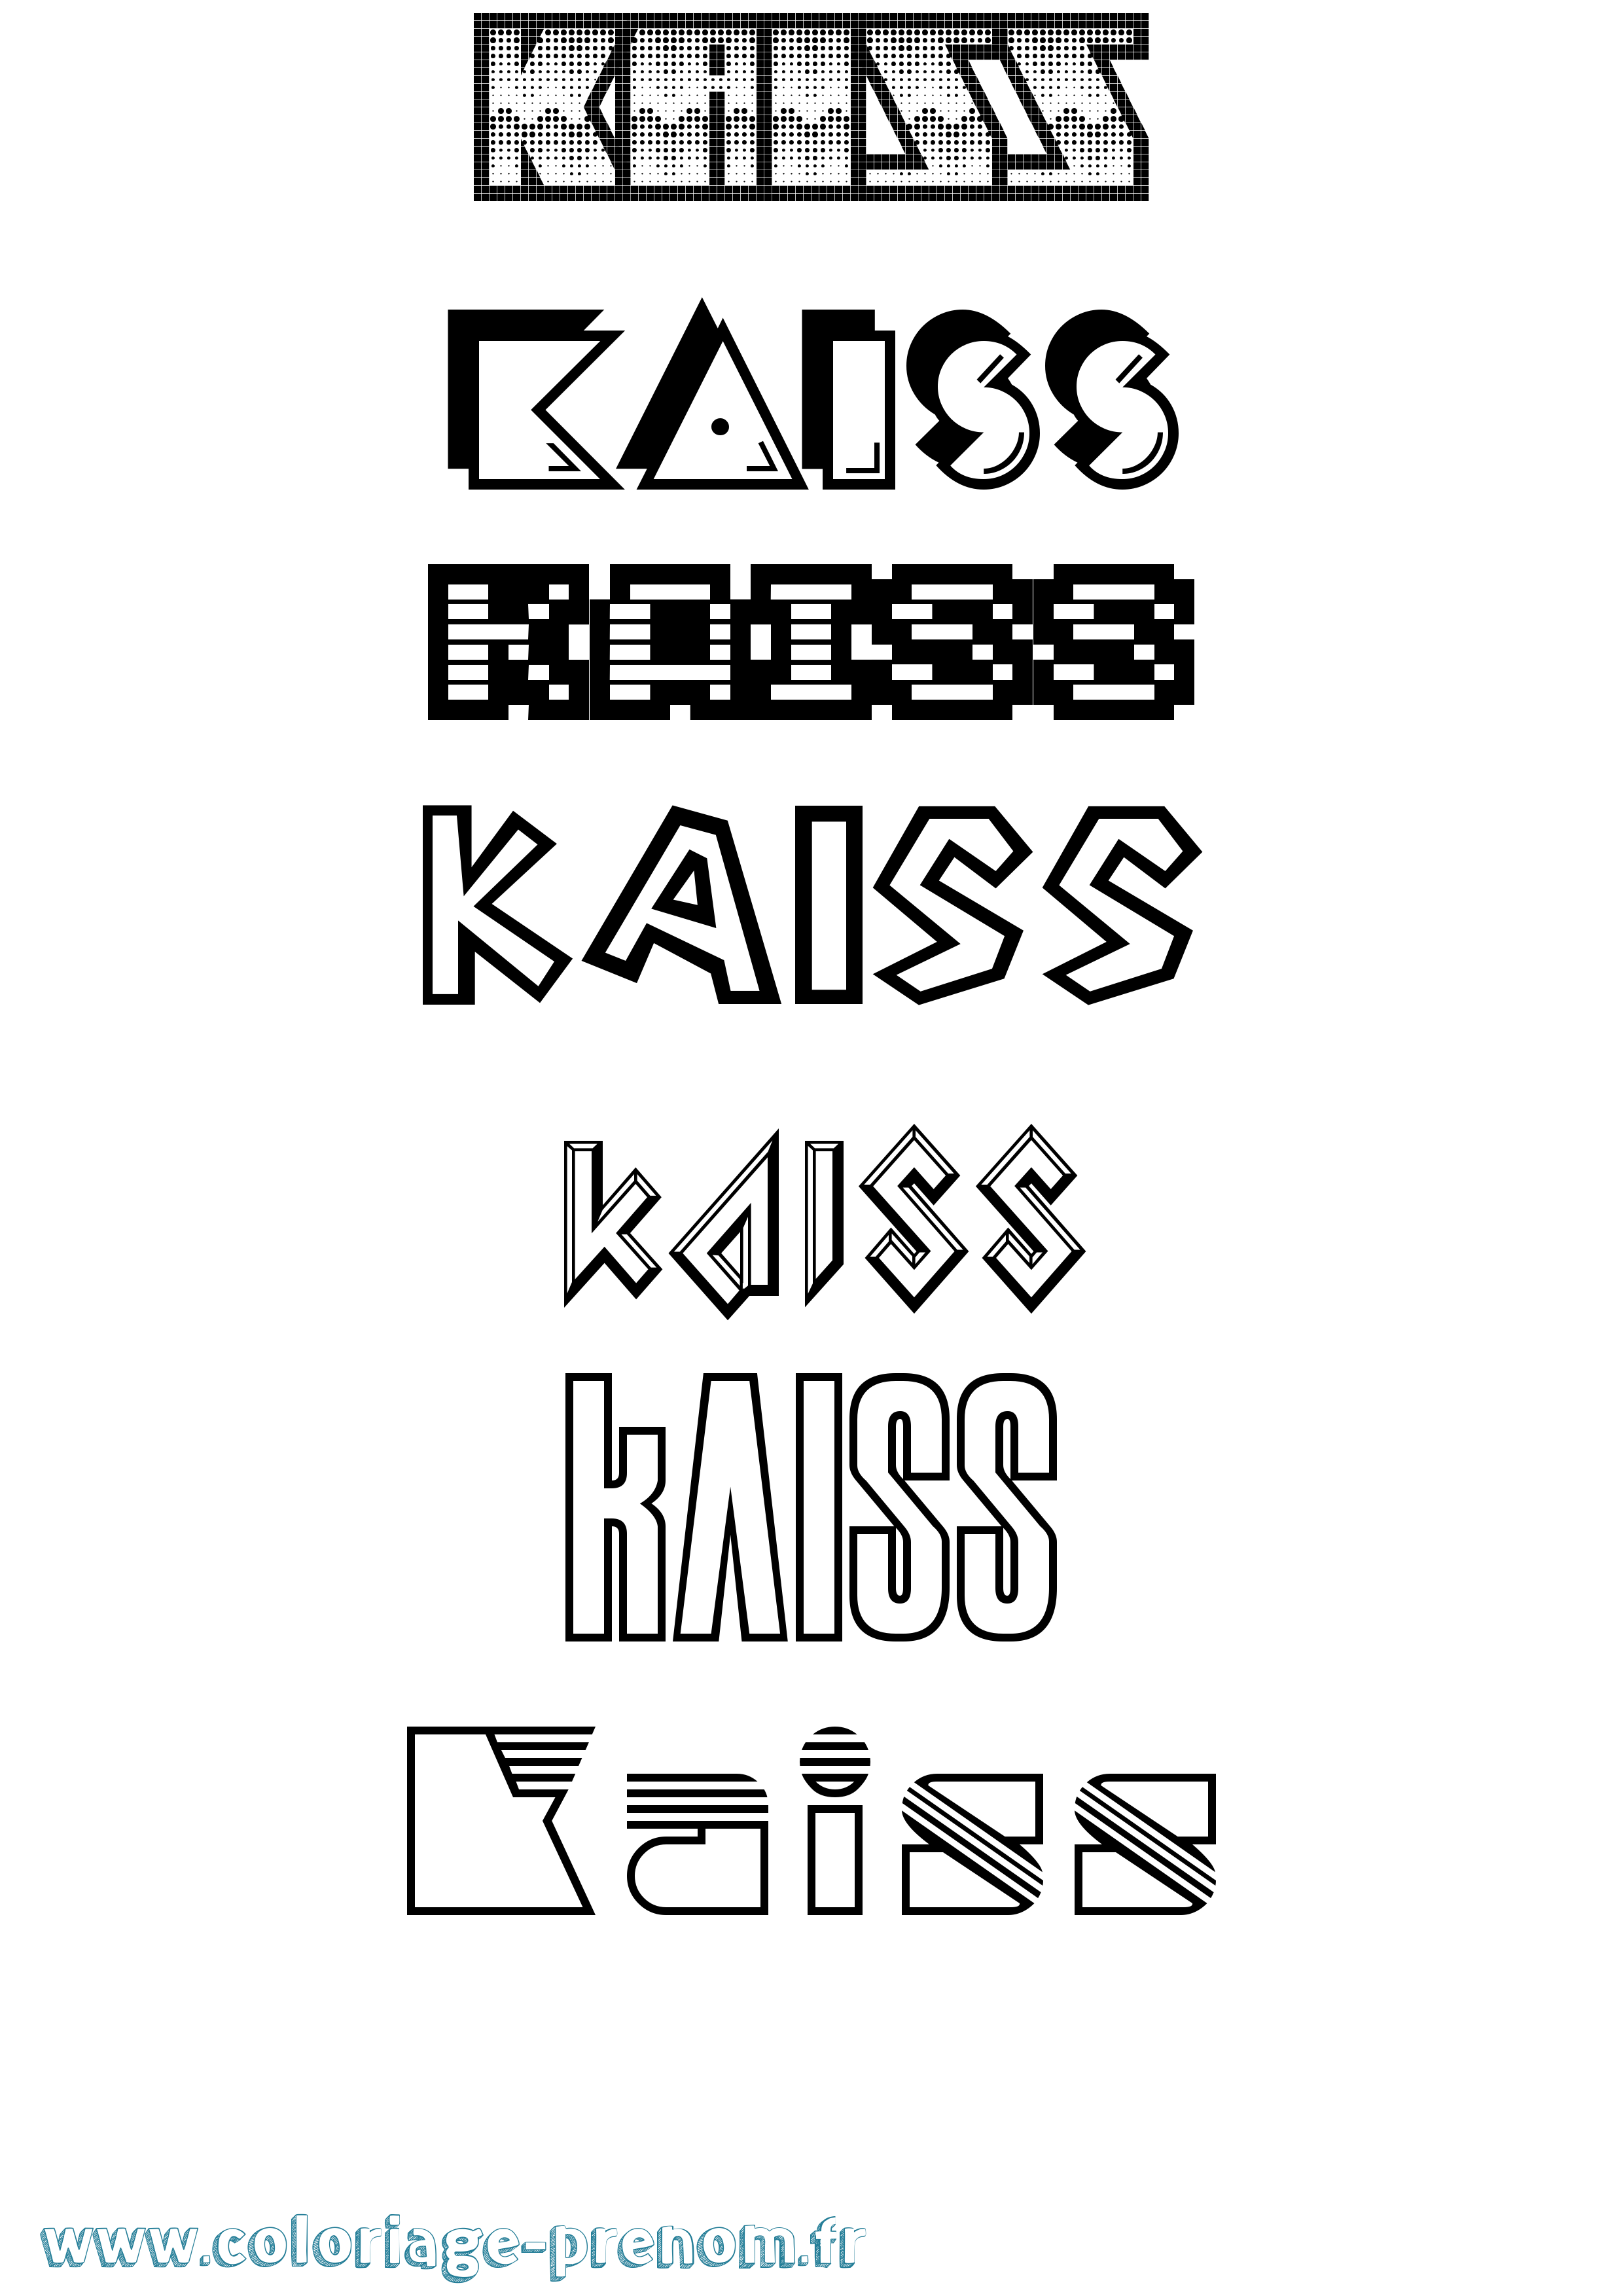 Coloriage prénom Kaiss Jeux Vidéos